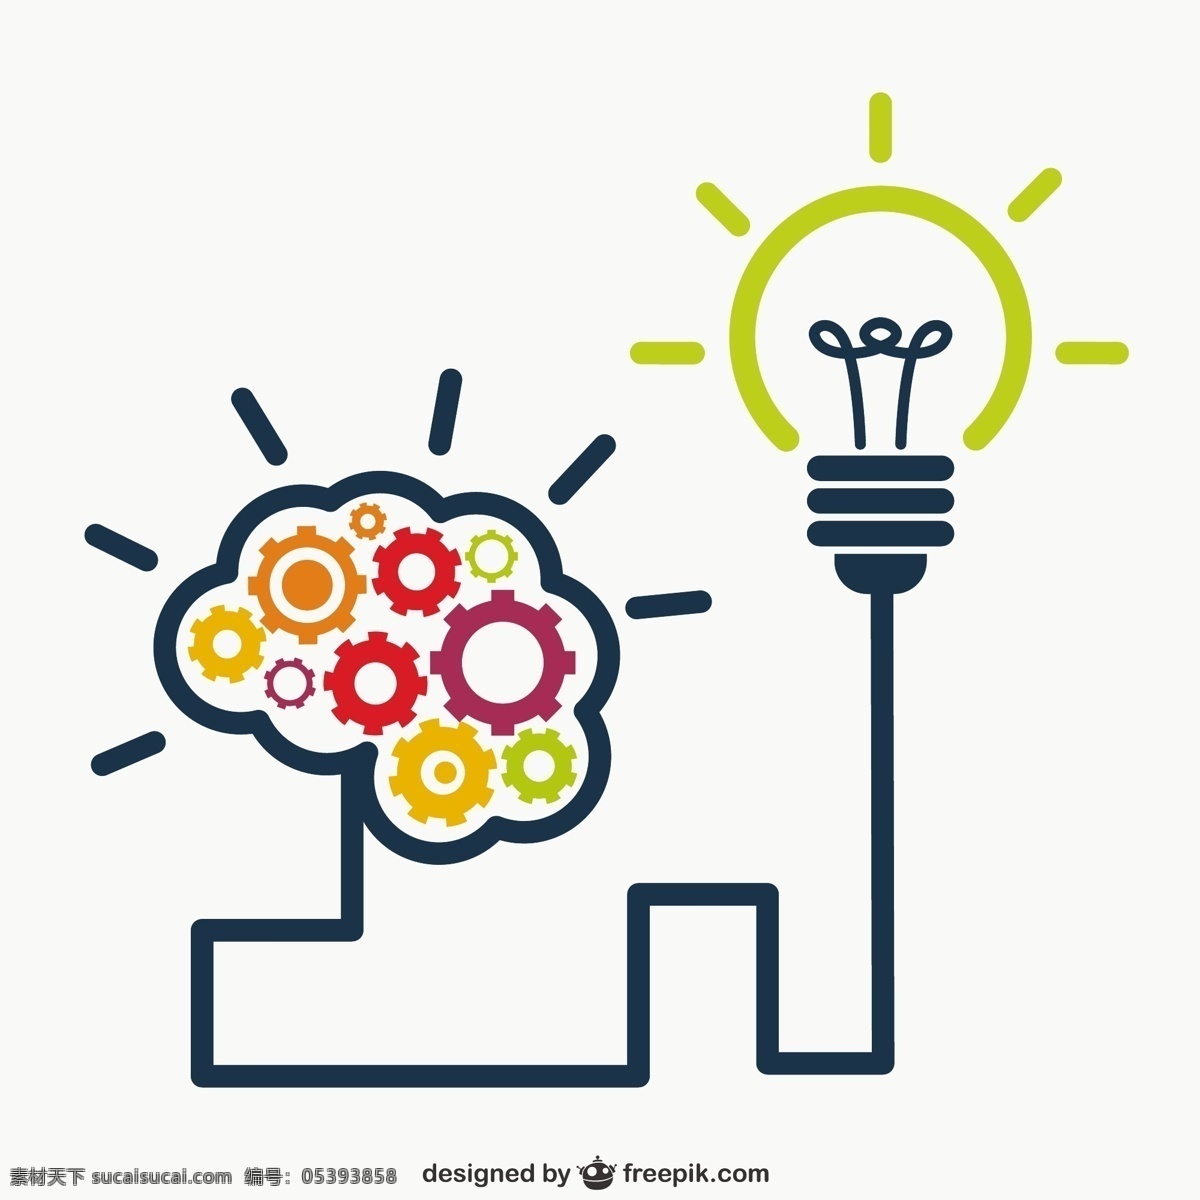 电灯泡背景 理念 电灯泡 创意 思维 创造力 知识 思想 灵感 头脑风暴 想象 智力 脑力激荡